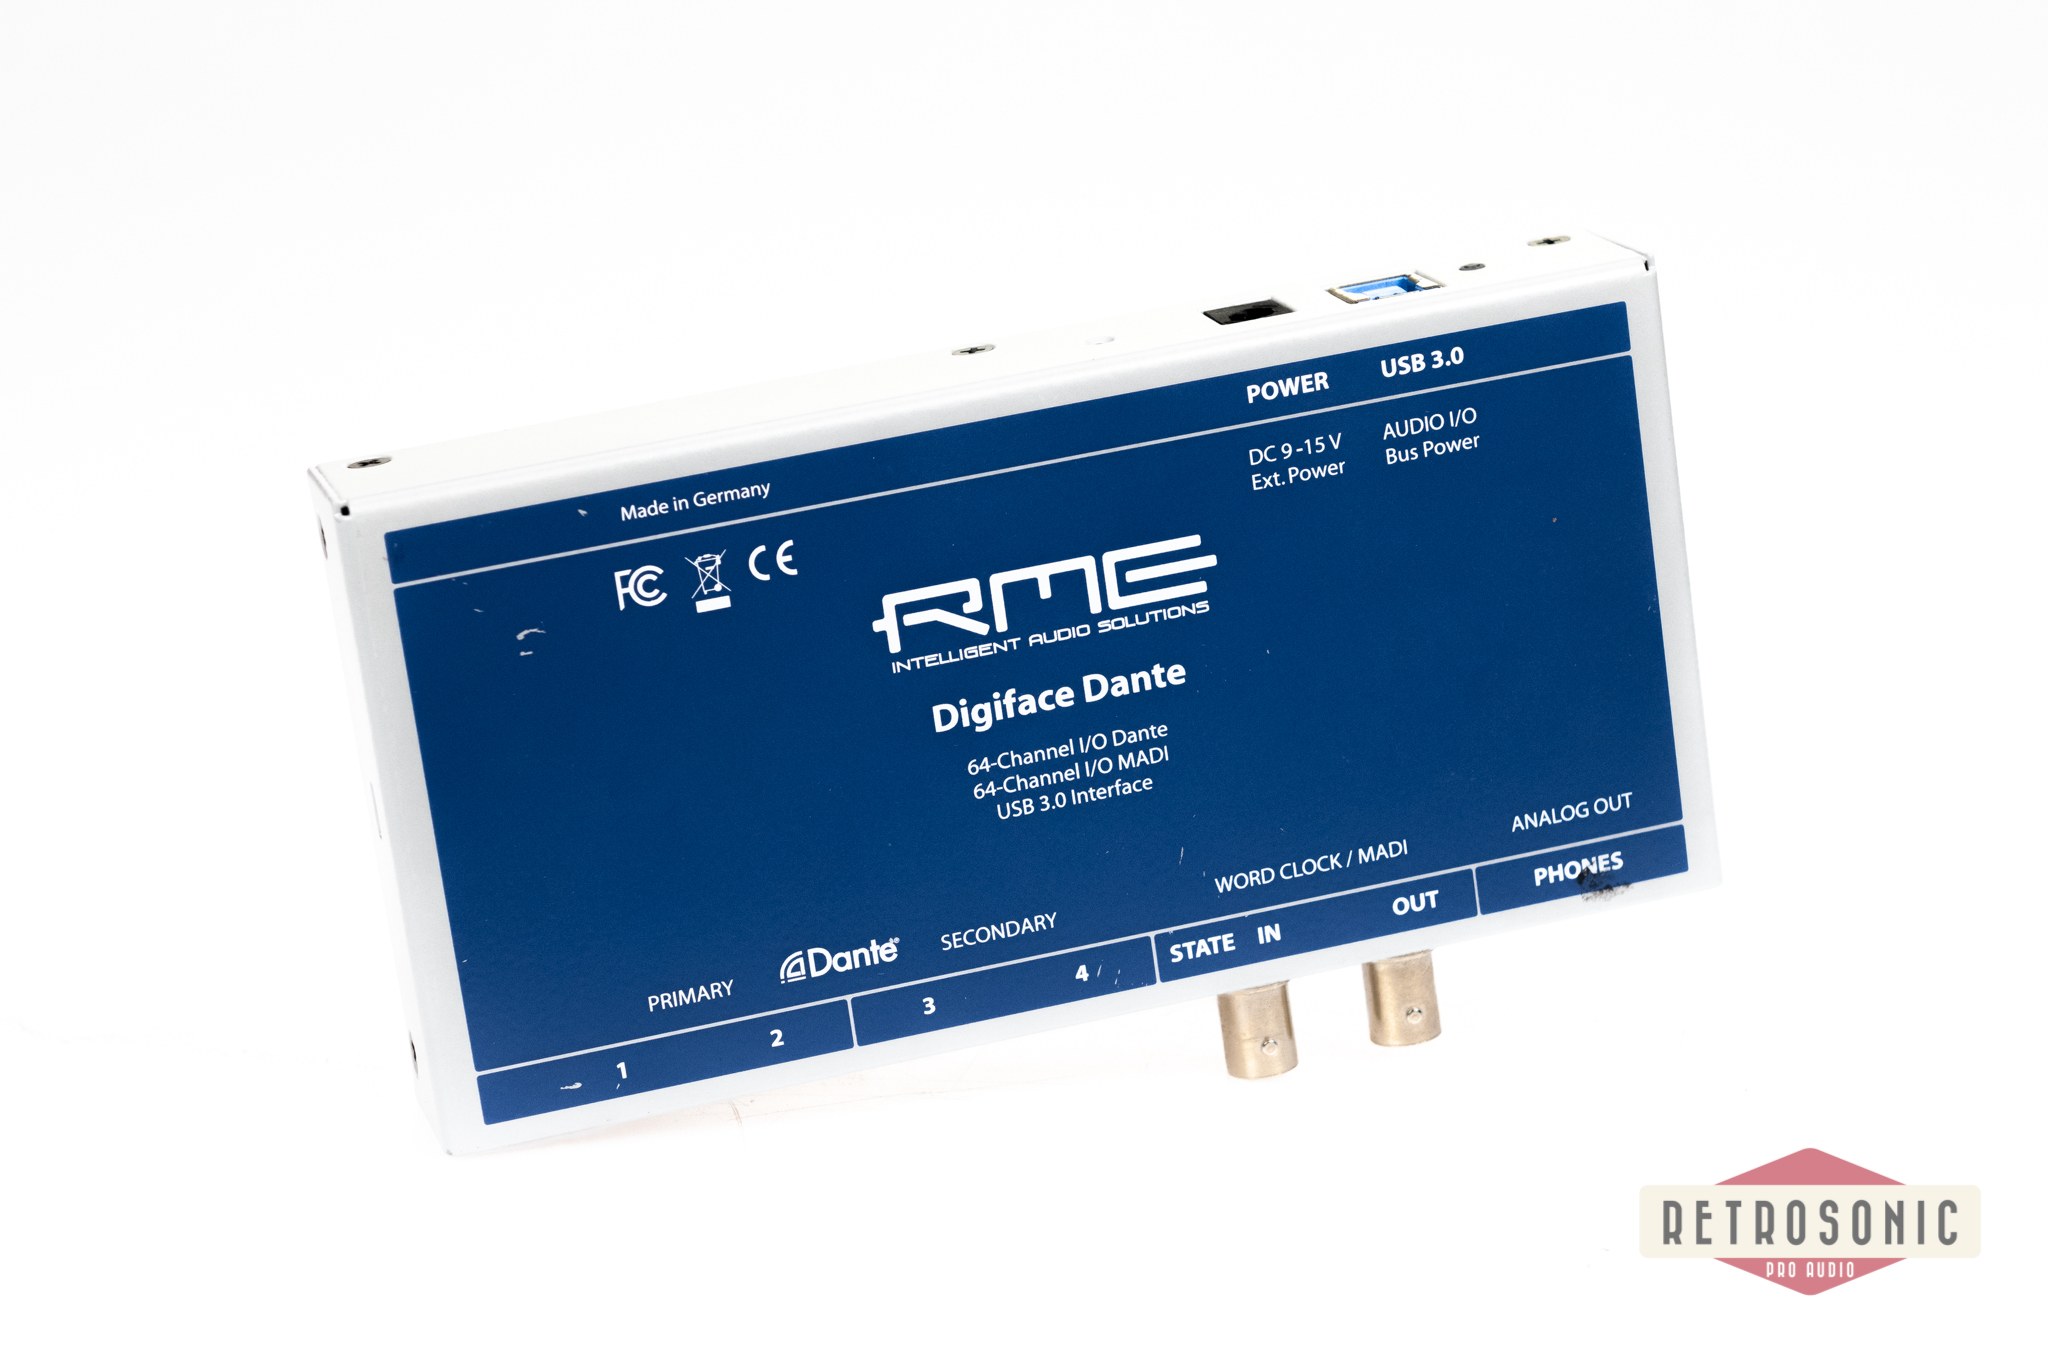 RME Digiface Dante 256-Channel 192 kHz USB Audio Interface